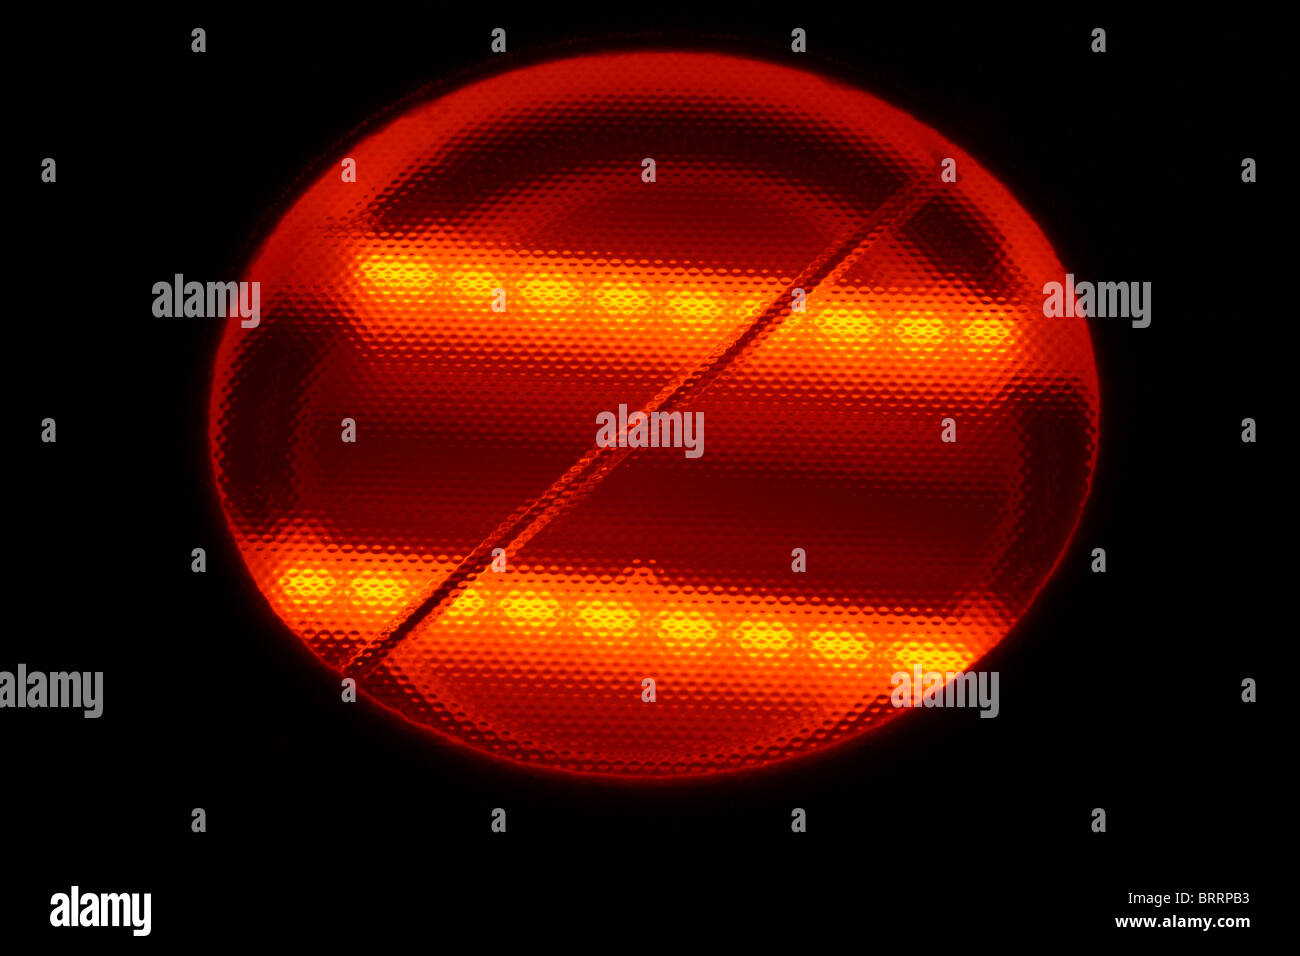 Plaque de cuisson halogène électrique Photo Stock - Alamy